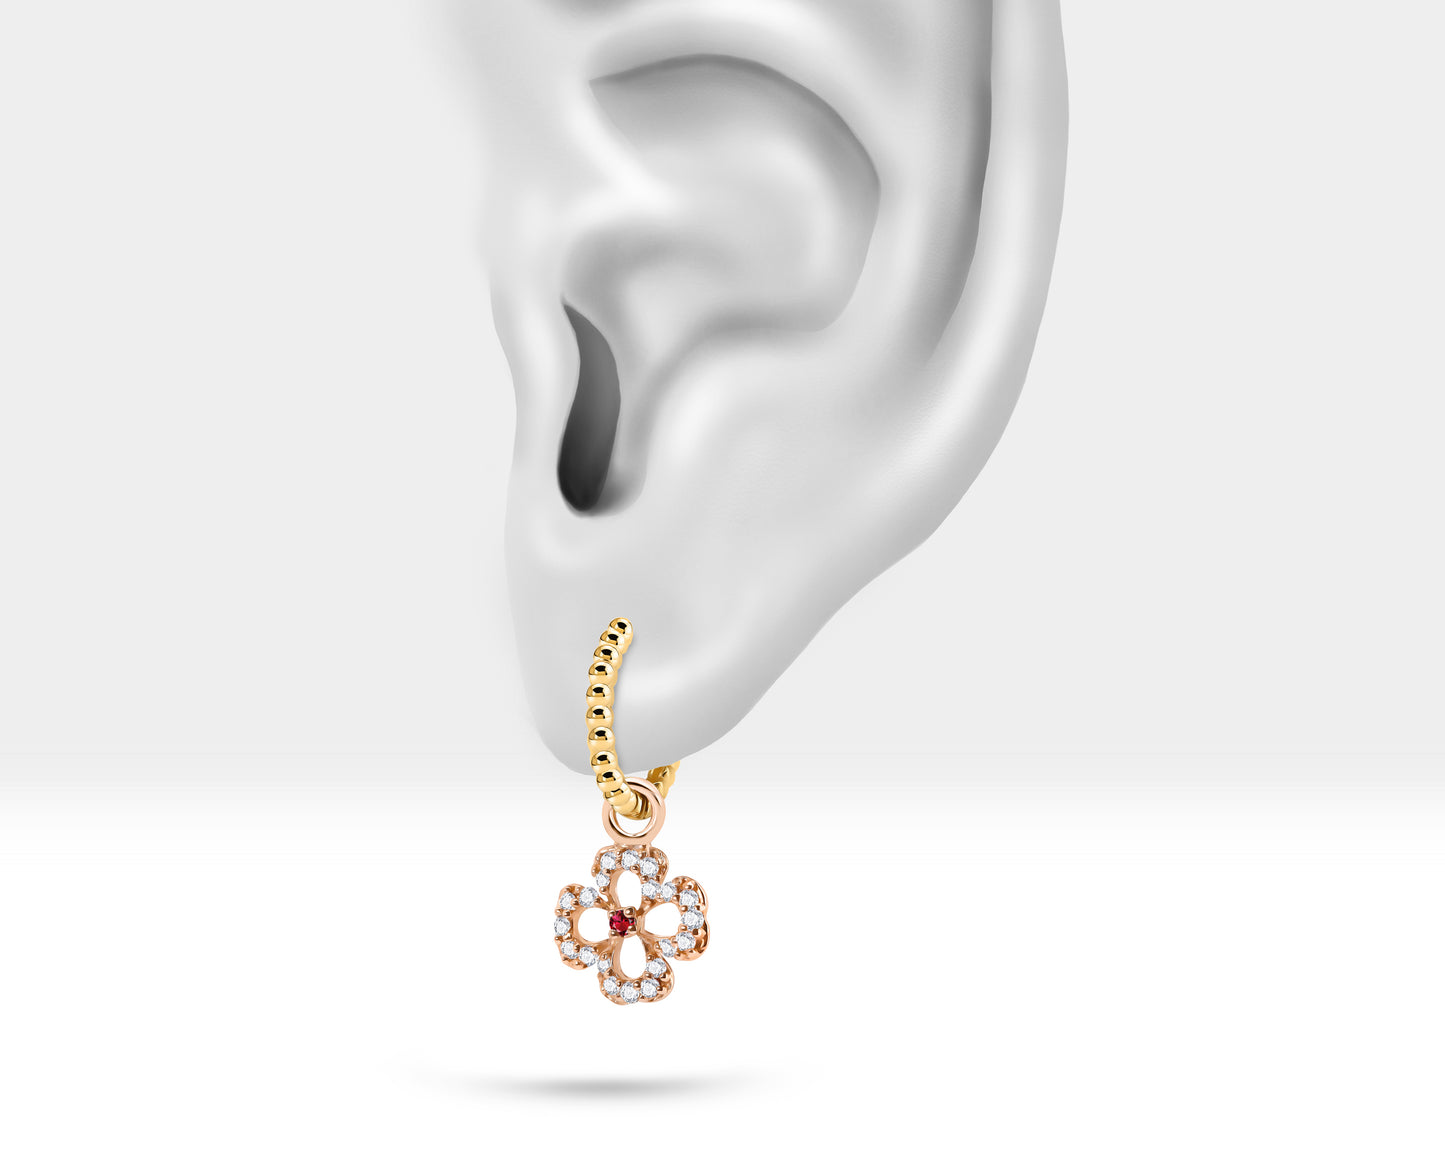 Dainty Flower Hoop Earrings,Diamond&Ruby Flower Dangle,14K Yellow Solid Gold,Beads Shank Hoop Earring